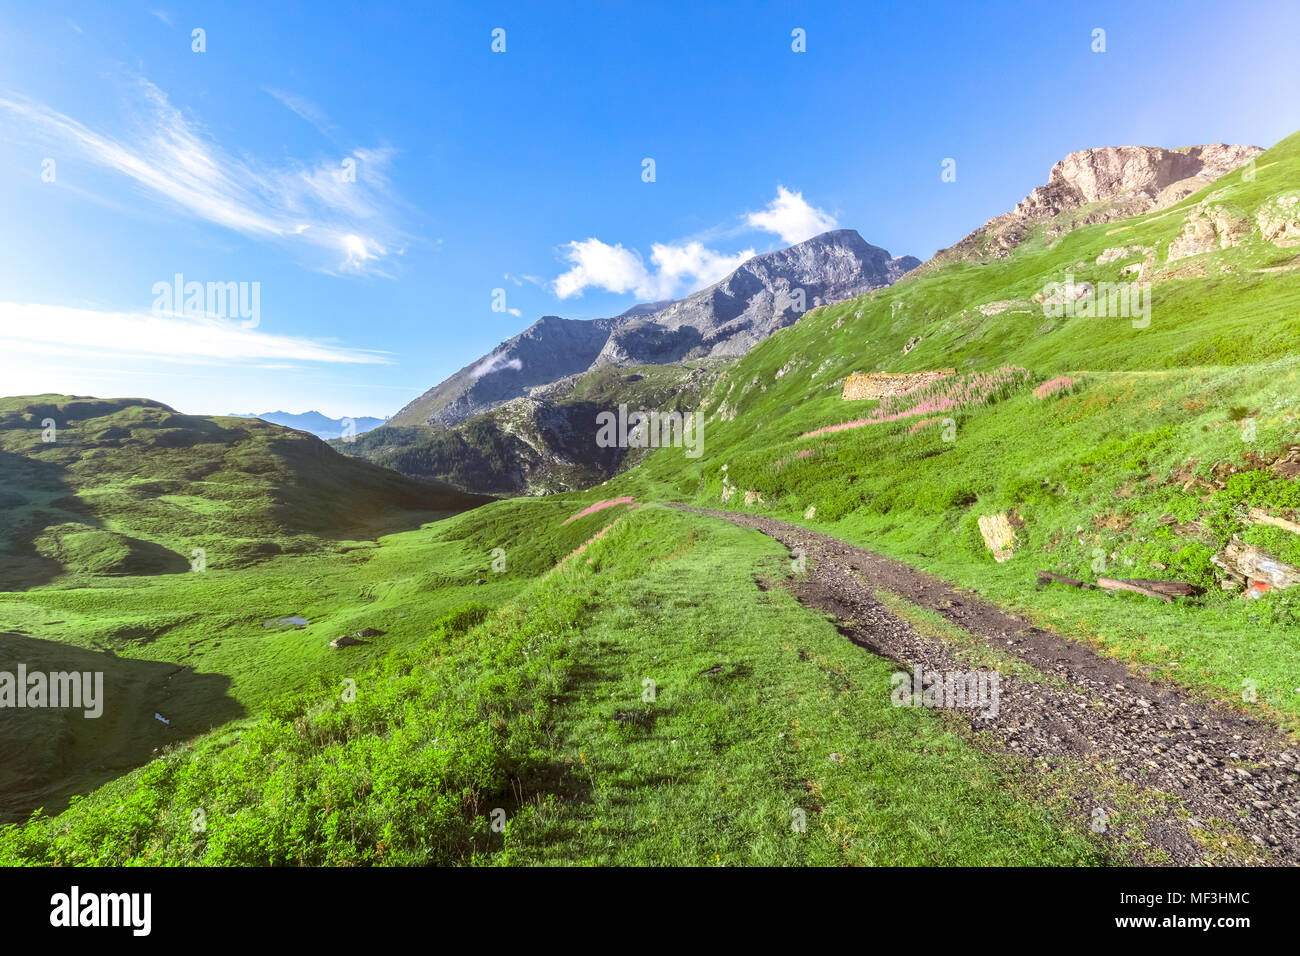 Francia, Savoie, Ródano-Alpes, al oeste de los Alpes, zona fronteriza, antigua carretera militar, camino de ripio Foto de stock